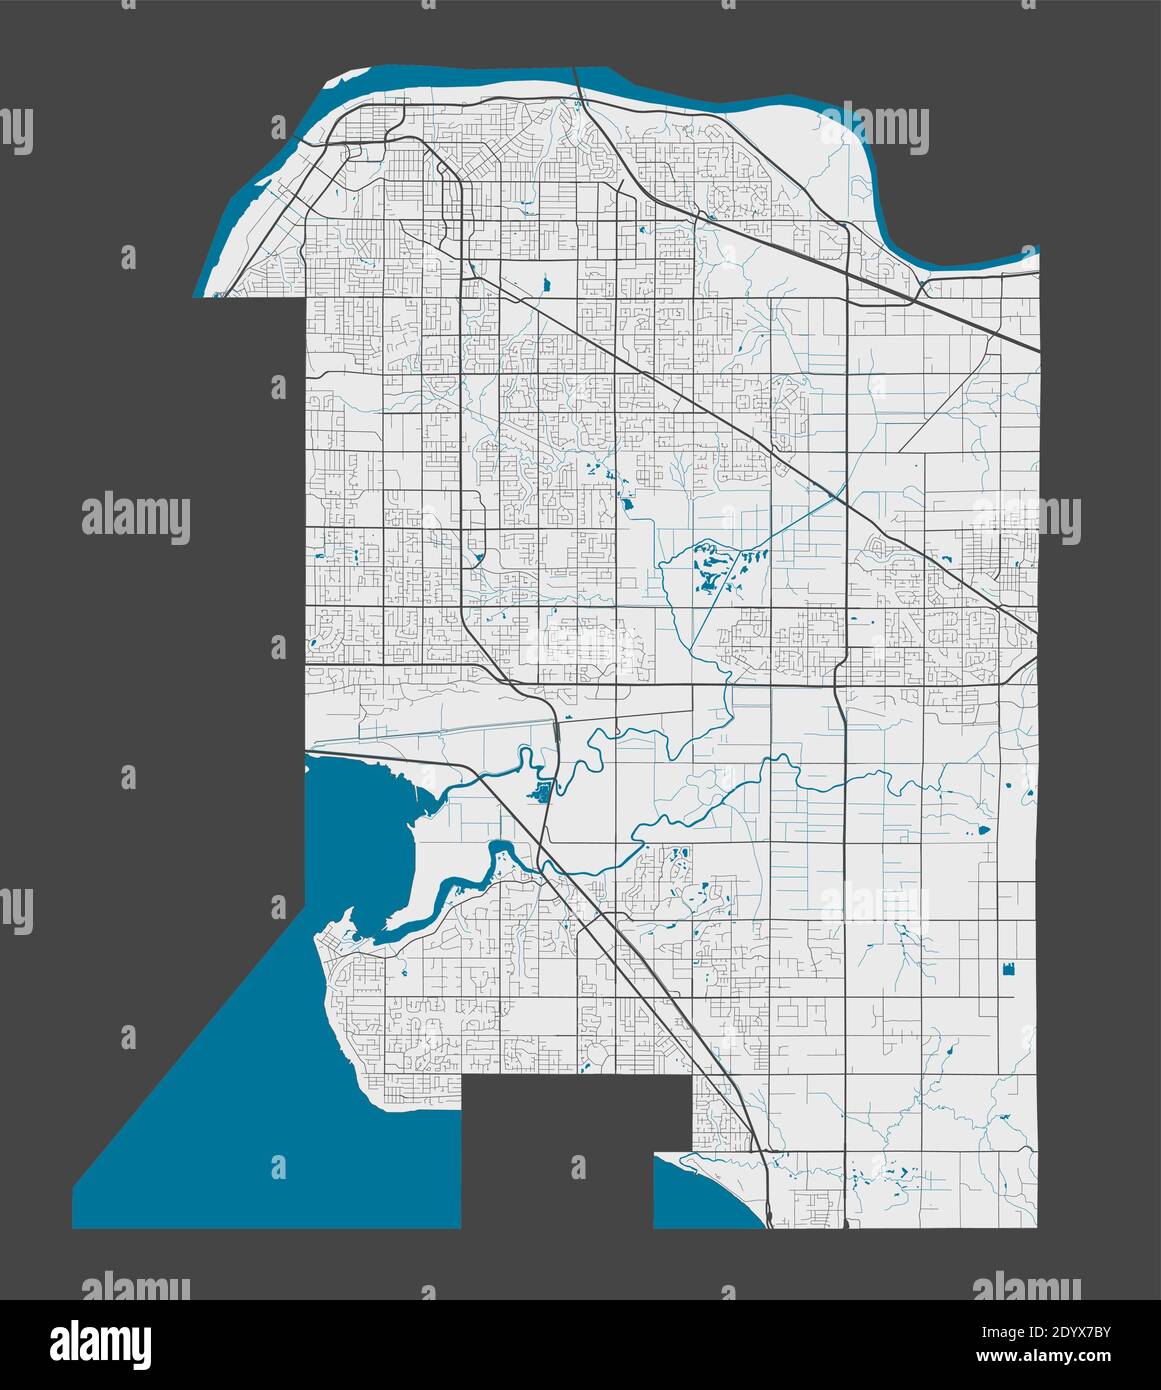 Mappa di Surrey. Mappa dettagliata dell'area amministrativa della città di Surrey. Panorama cittadino. Illustrazione vettoriale priva di royalty. Mappa con autostrade, strade, Illustrazione Vettoriale